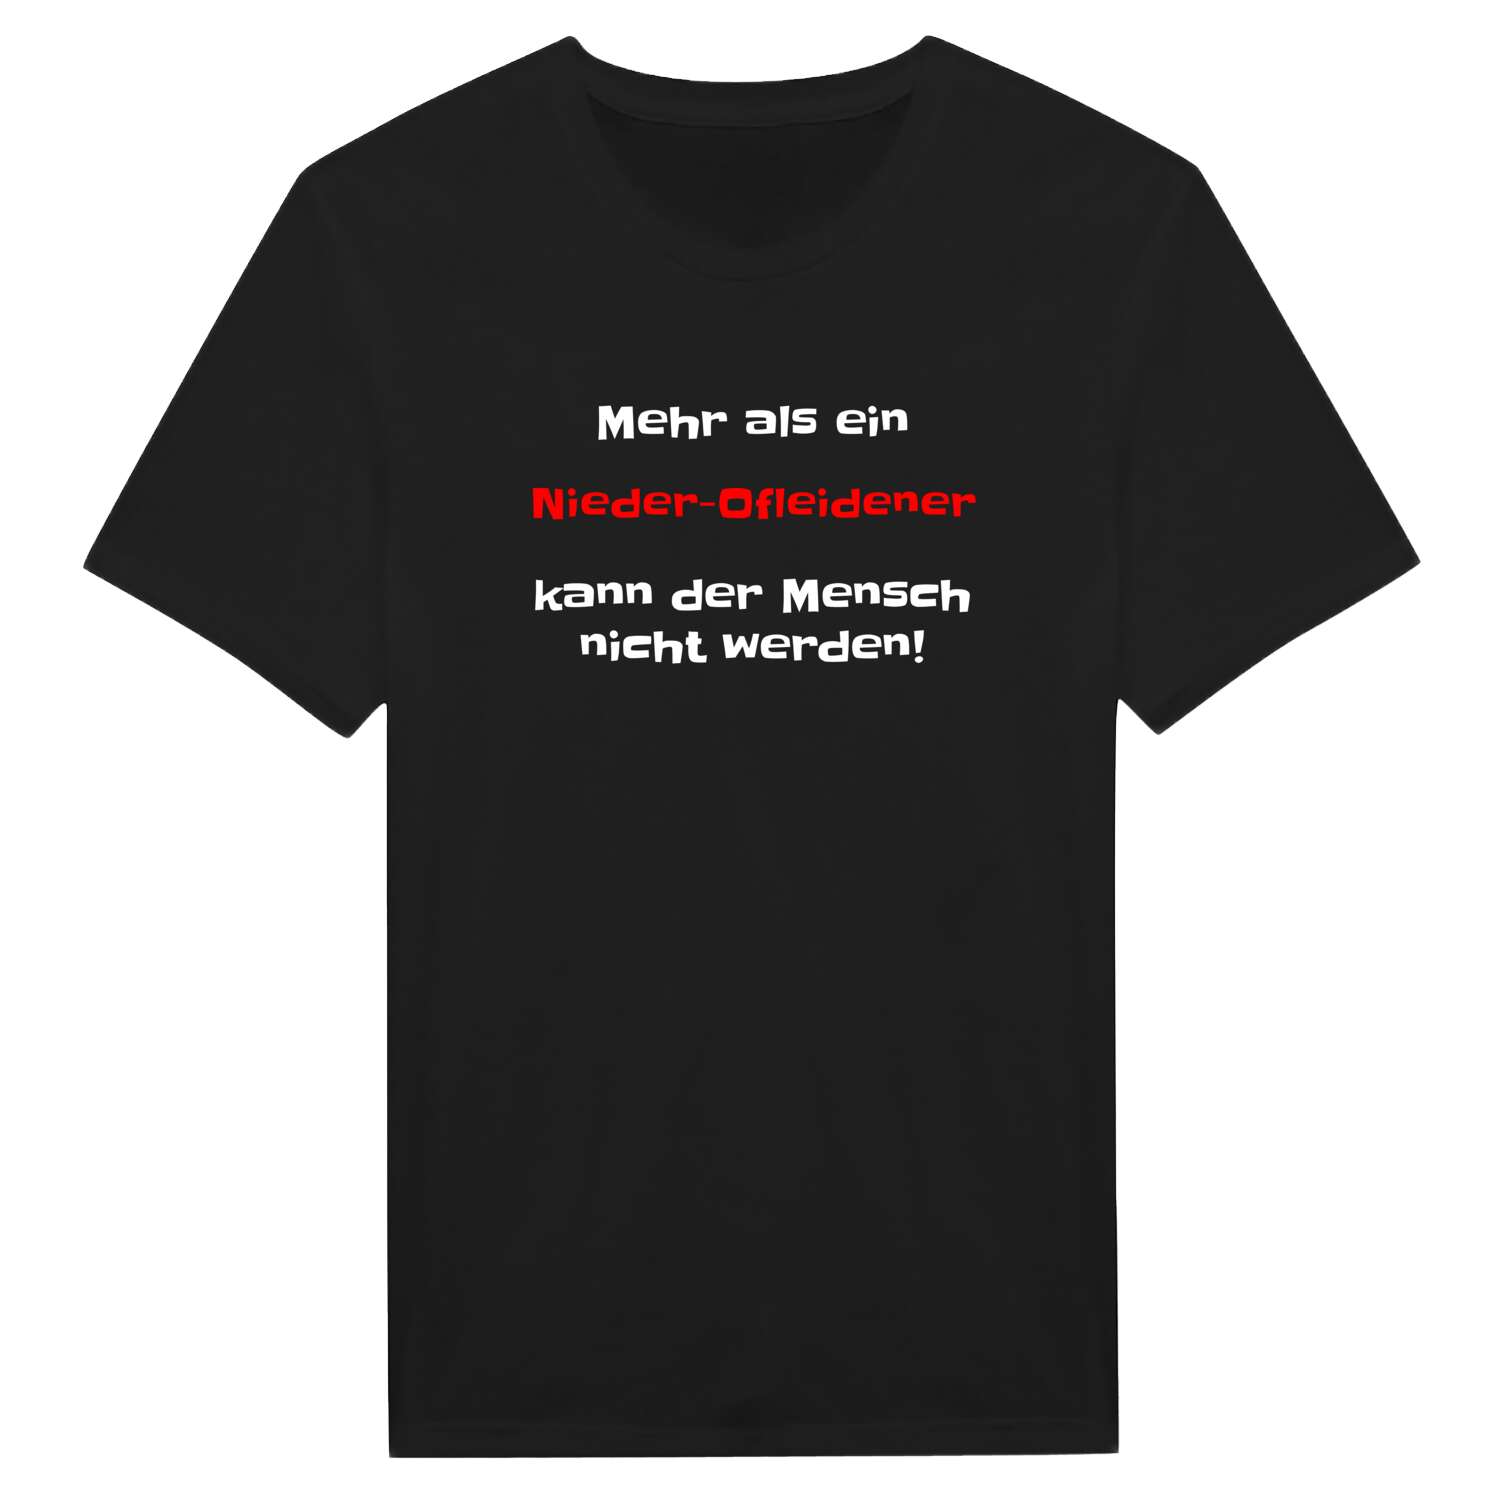 Nieder-Ofleiden T-Shirt »Mehr als ein«